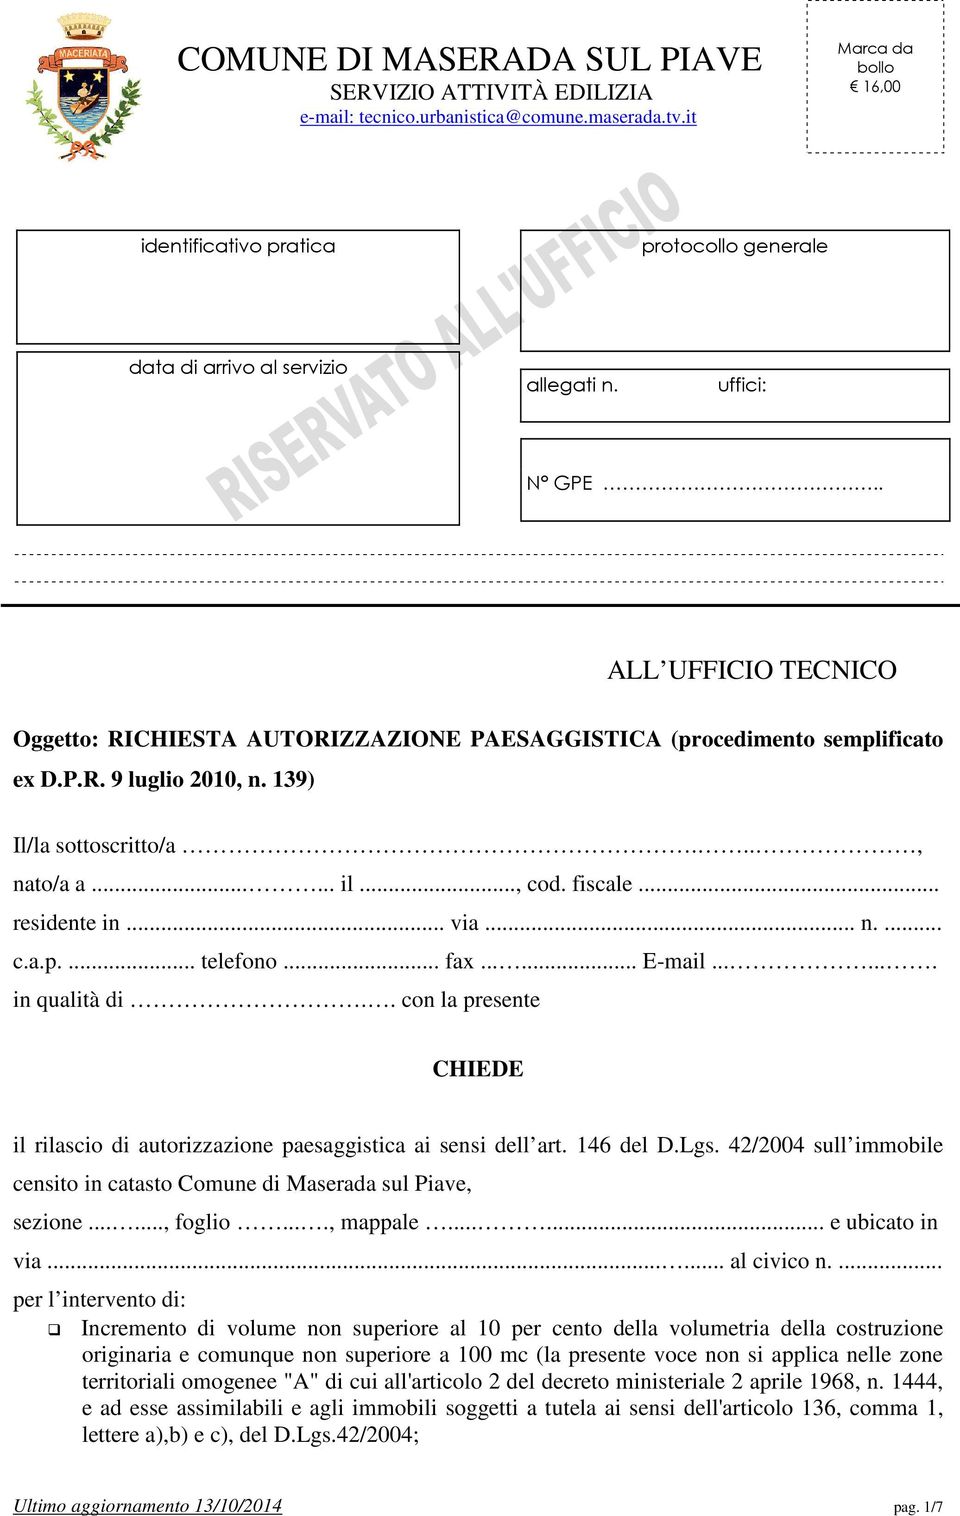 . ALL UFFICIO TECNICO Oggetto: RICHIESTA AUTORIZZAZIONE PAESAGGISTICA (procedimento semplificato ex D.P.R. 9 luglio 2010, n. 139) Il/la sottoscritto/a..., nato/a a...... il..., cod. fiscale.